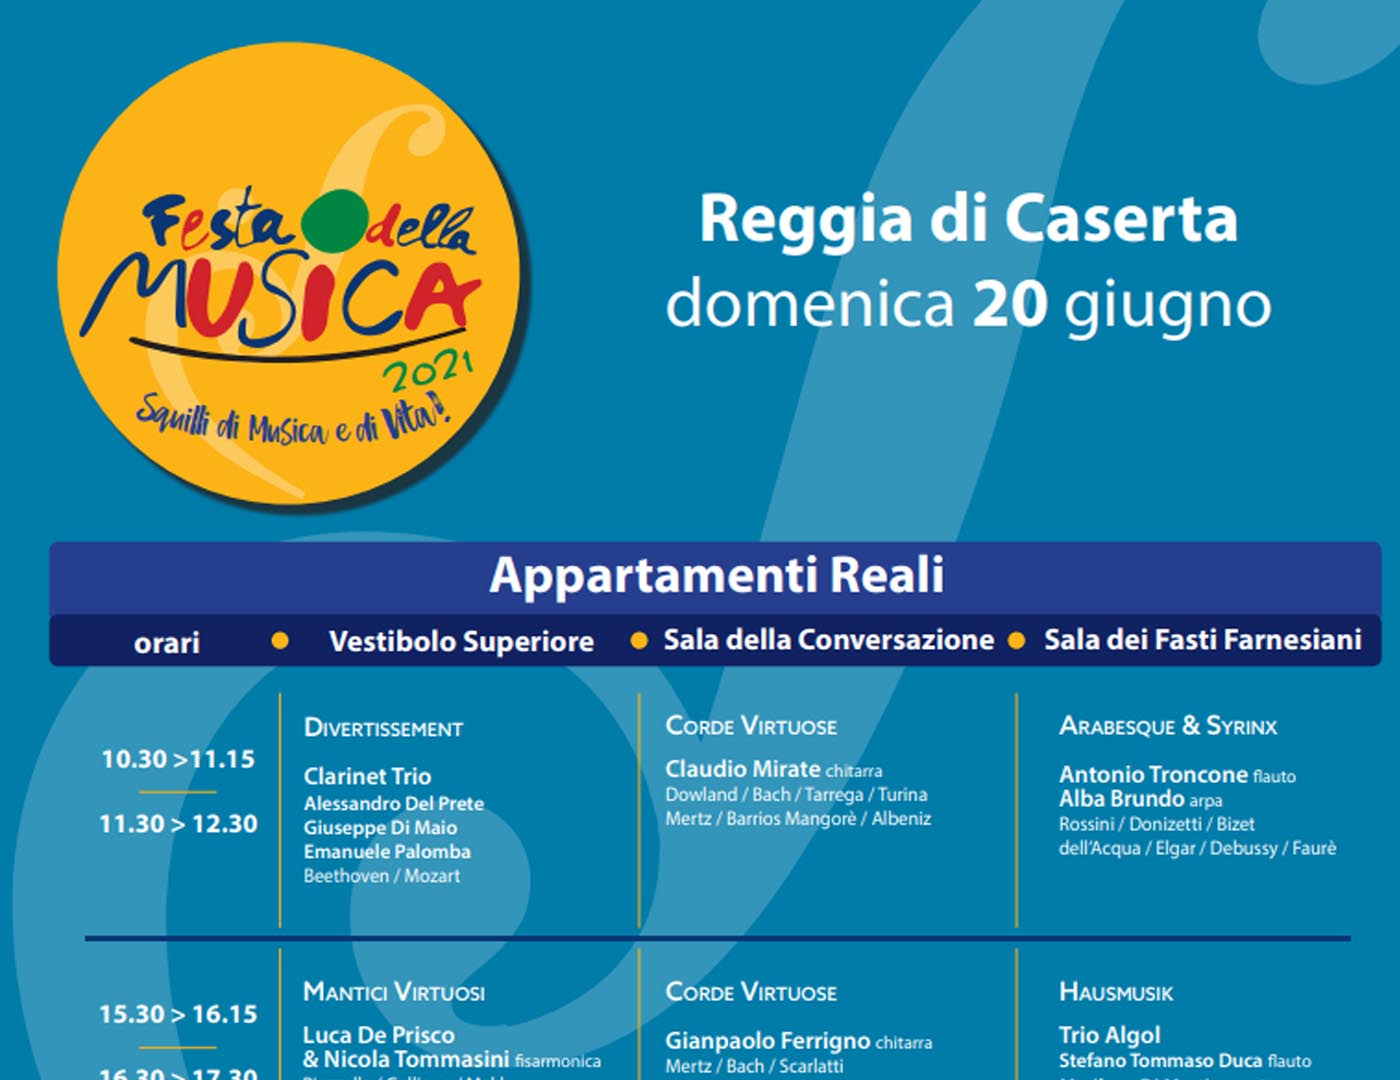 FESTA DELLA MUSICA - Domenica 20/06/2021 10:30  - Reggia di Caserta 